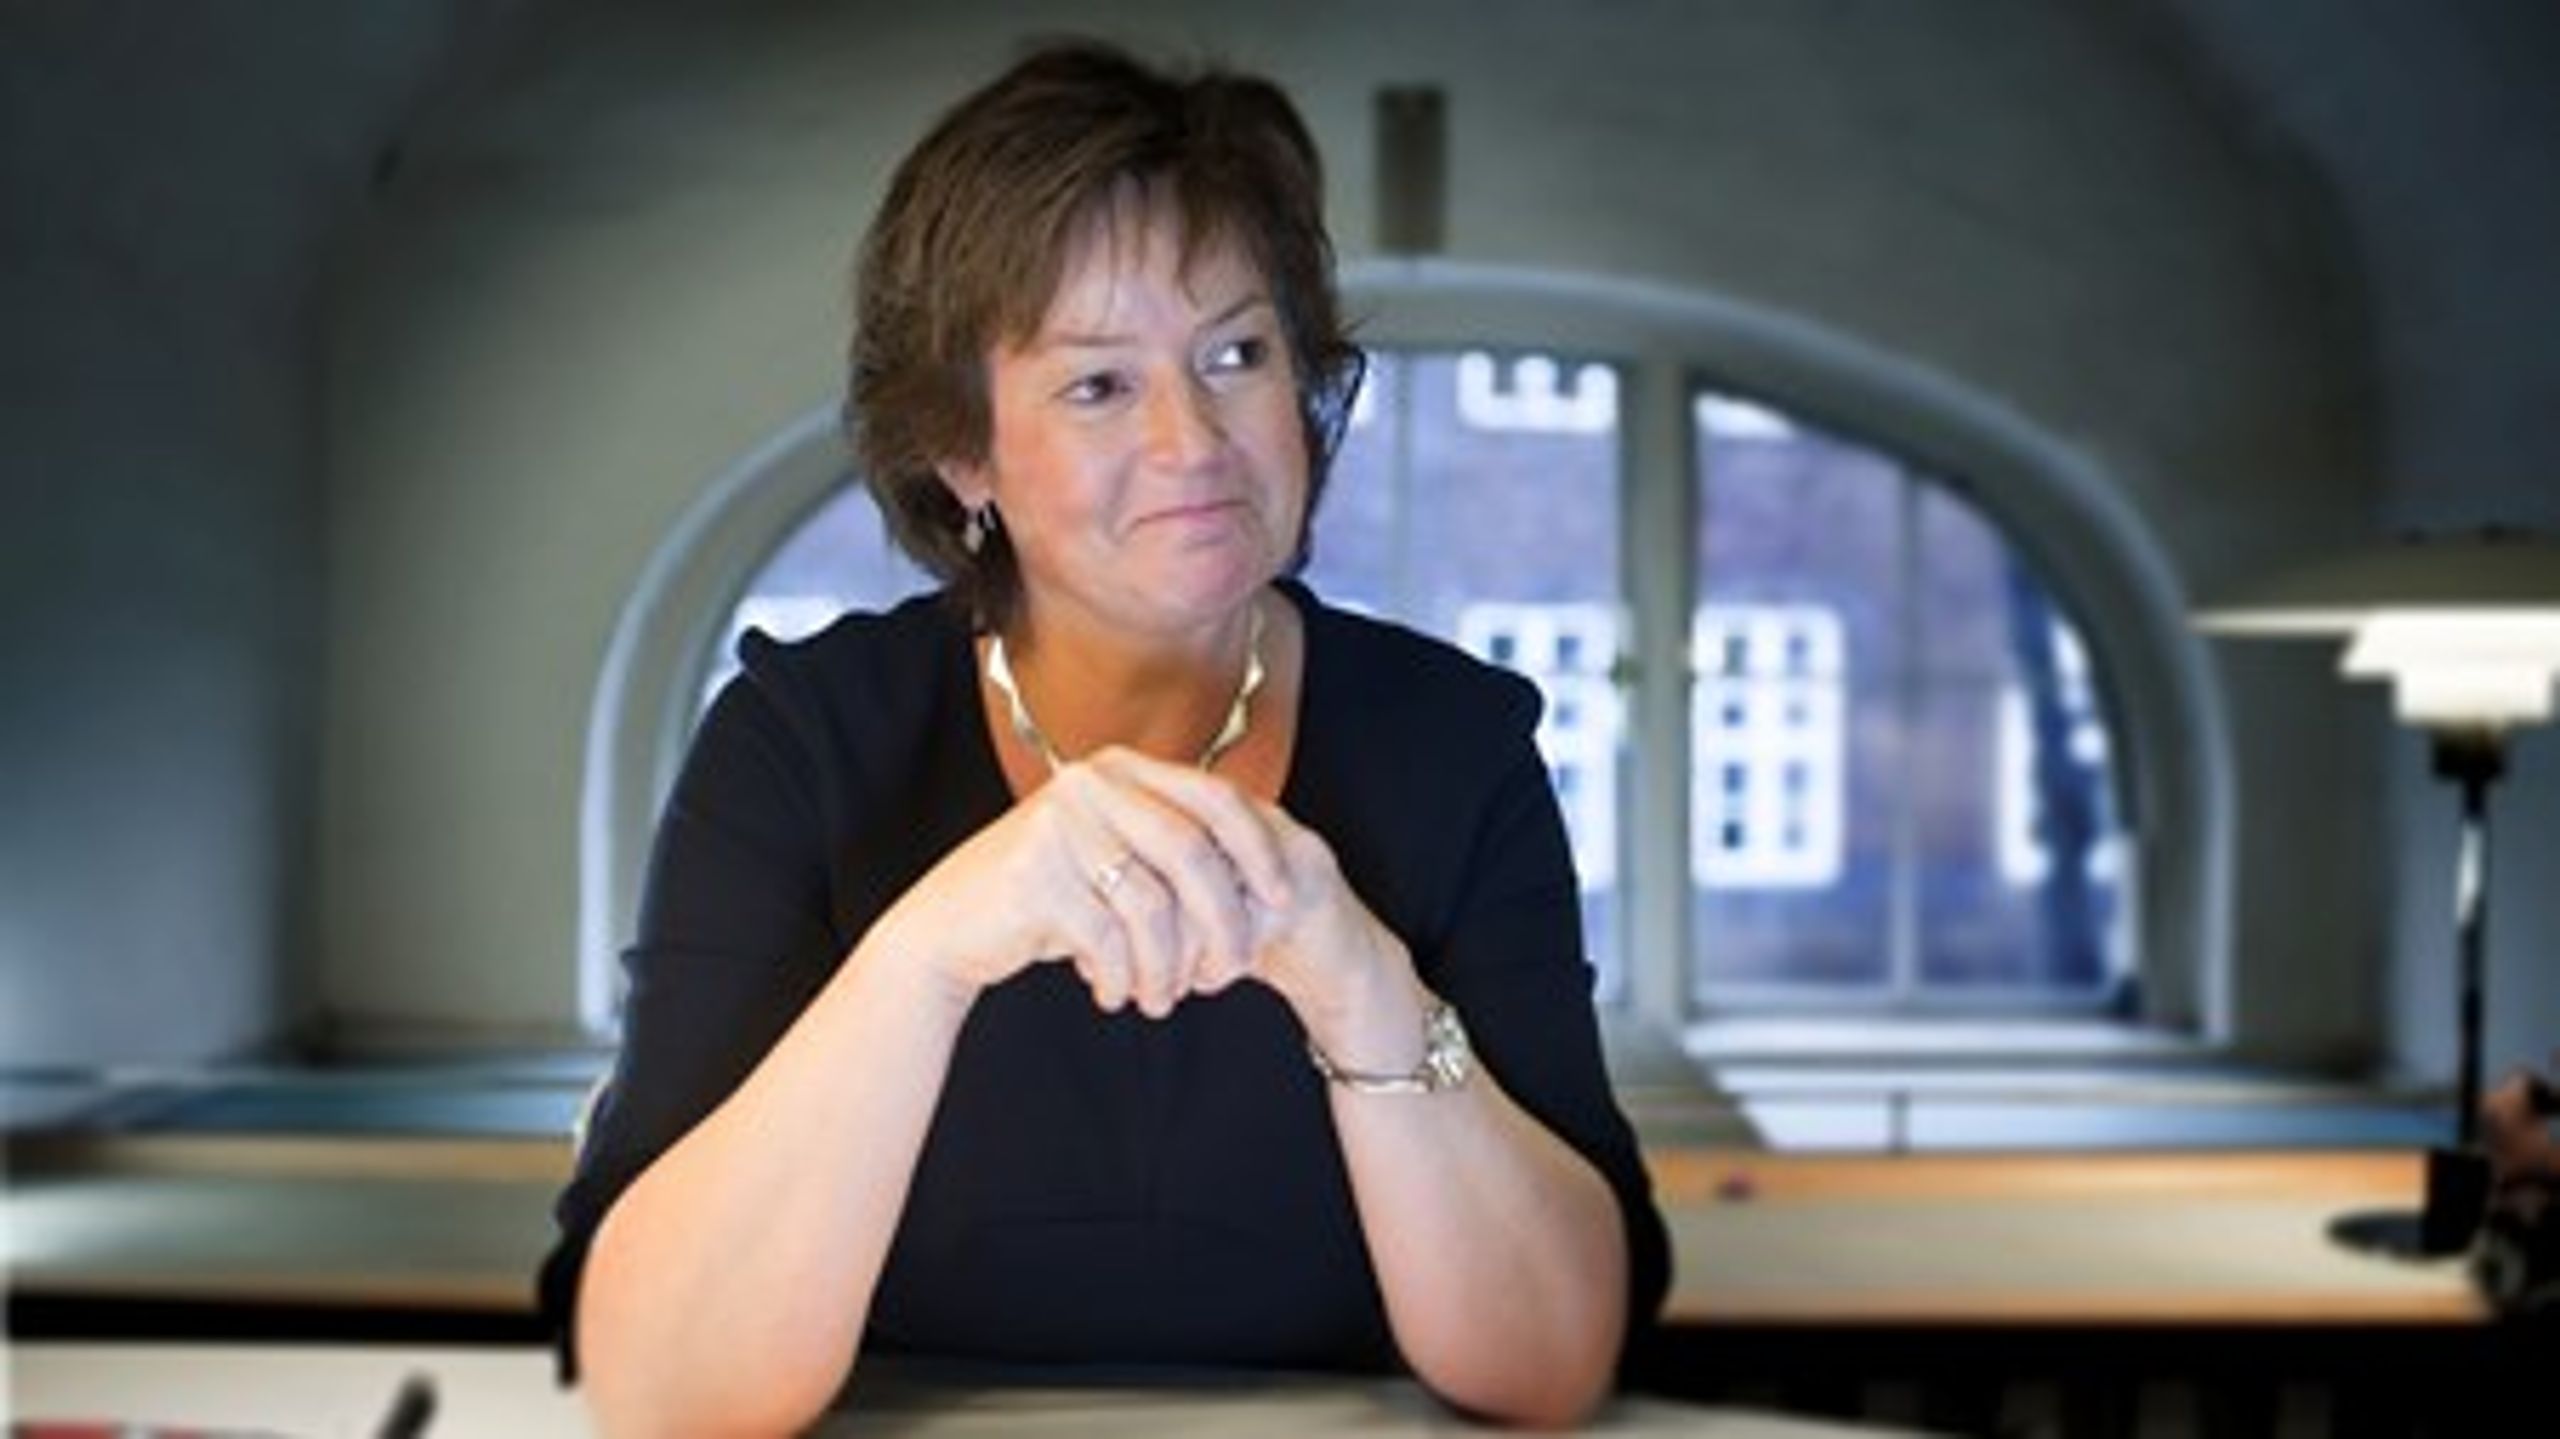 Venstres ordfører for børn og undervisning, Anni Matthiesen, mener ikke, at alle ungdomsuddannelser skal føre til længere videregående uddannelser.